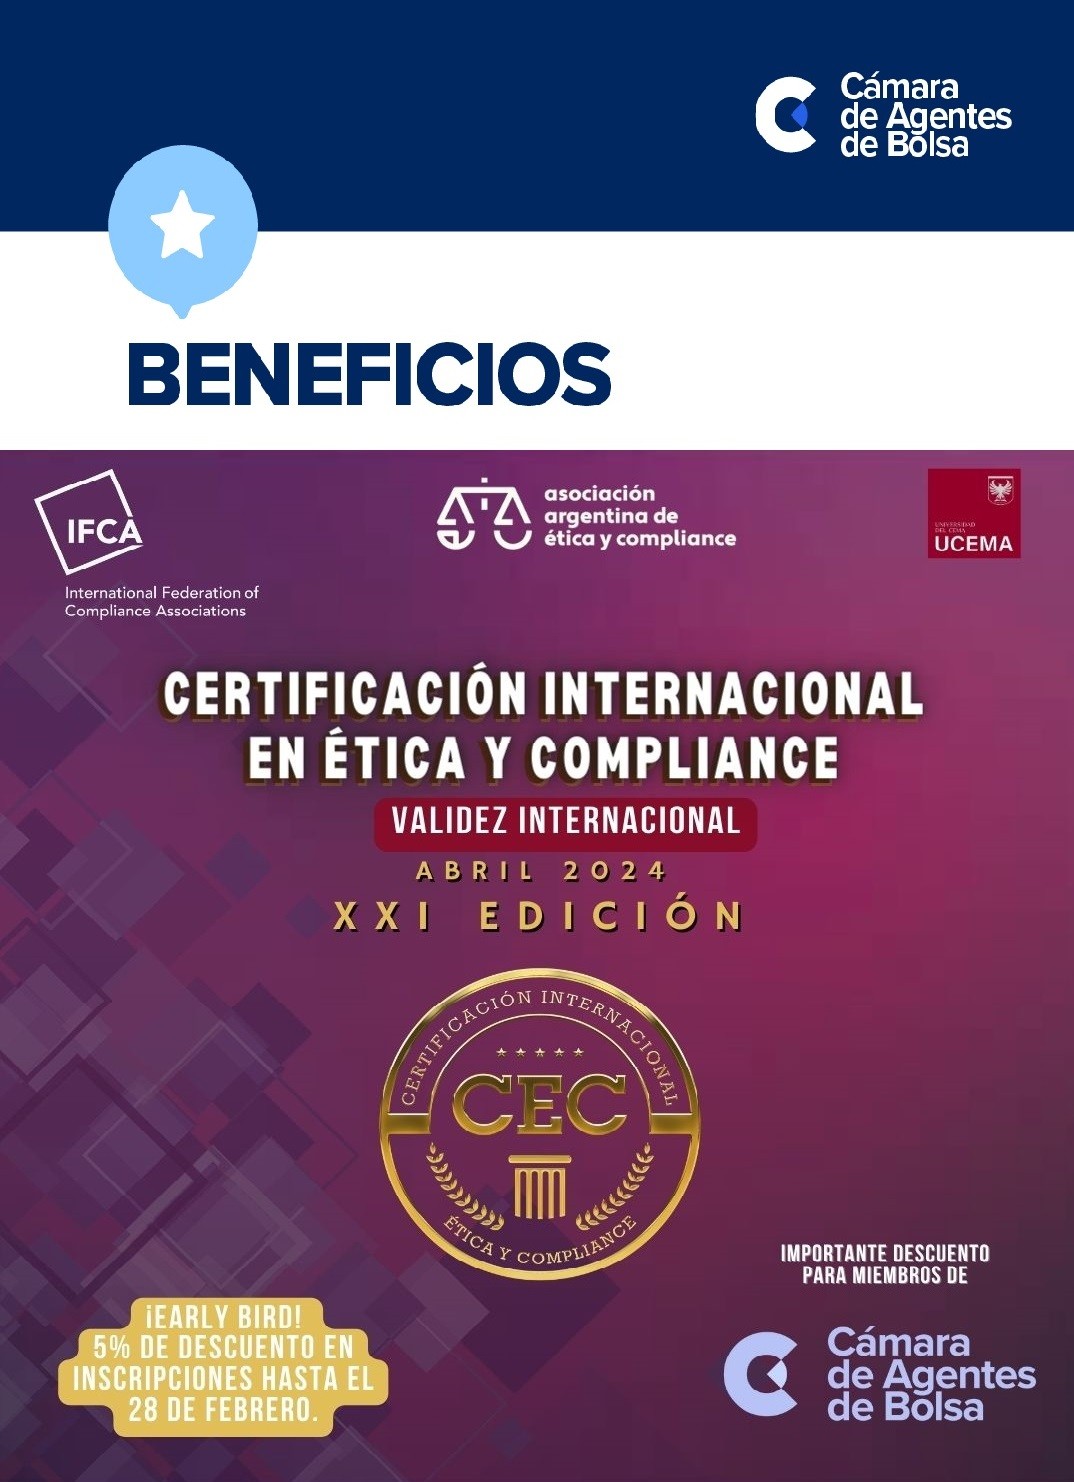 Certificacin Internacional en tica y Compliance! (AAEC | UCEMA)
Recibidos